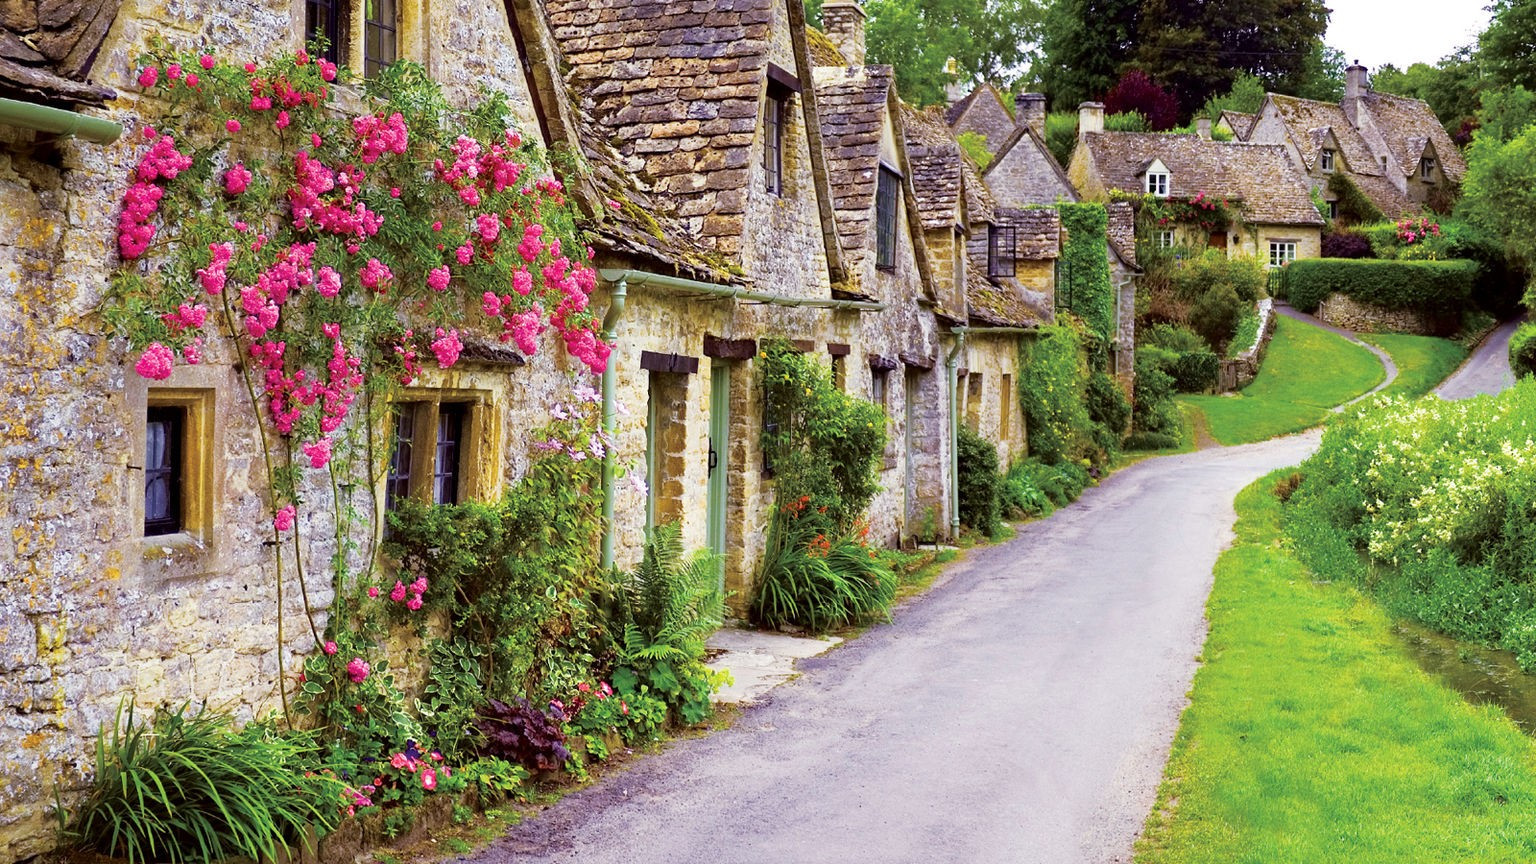 Du ngoạn miền quê nước Anh, ngắm những ngôi làng cổ xinh đẹp - 1